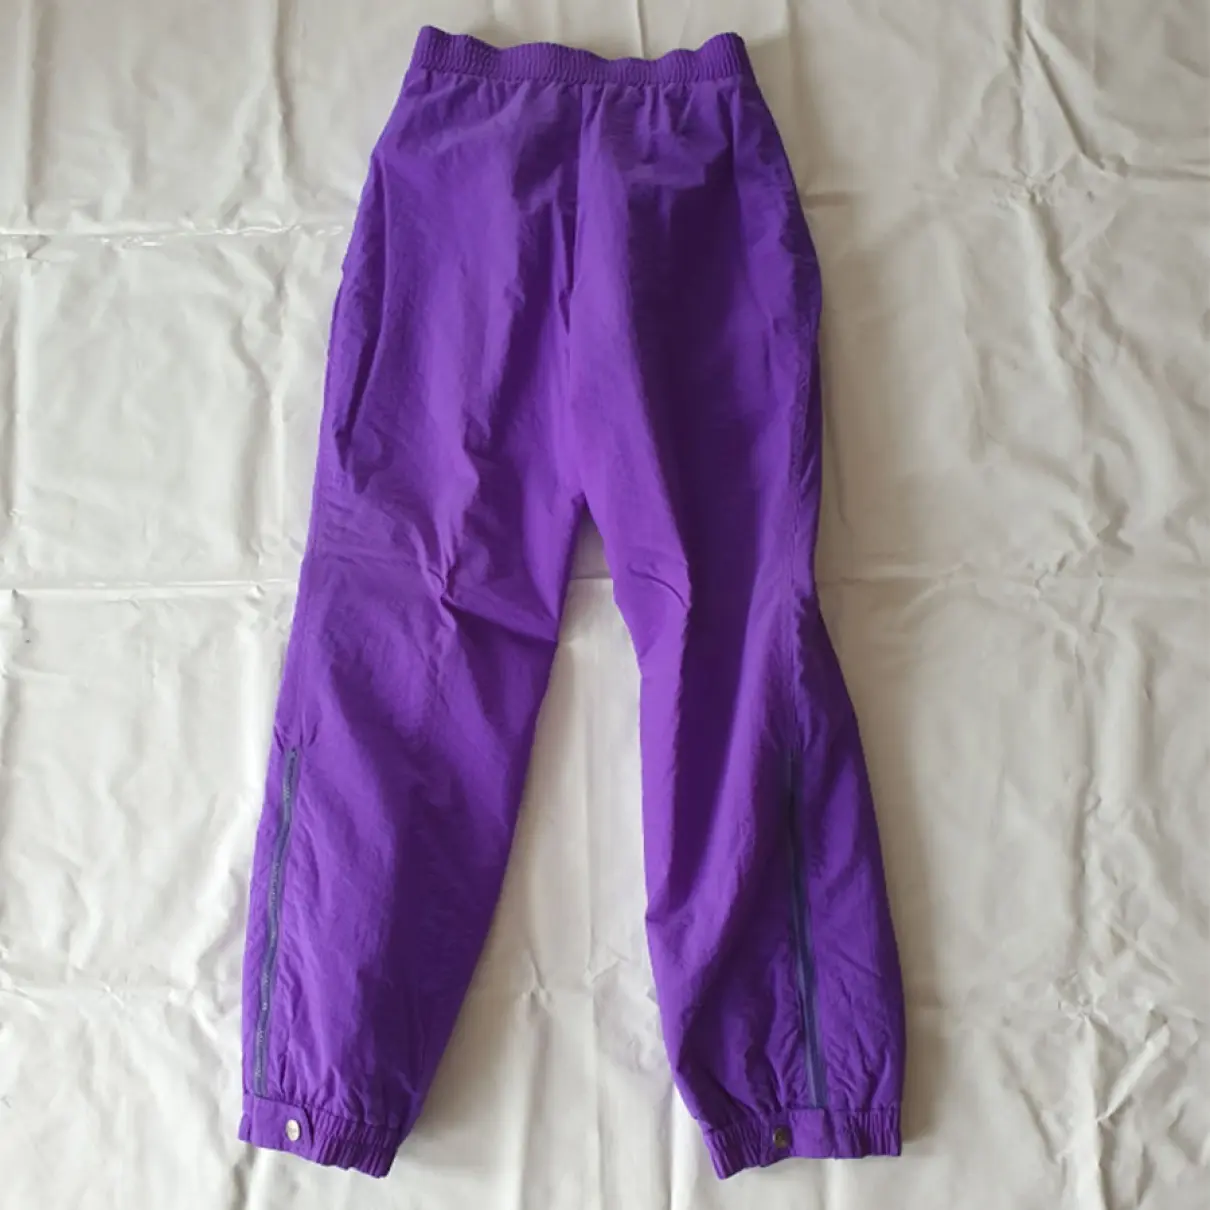 Buy Fila Trousers online